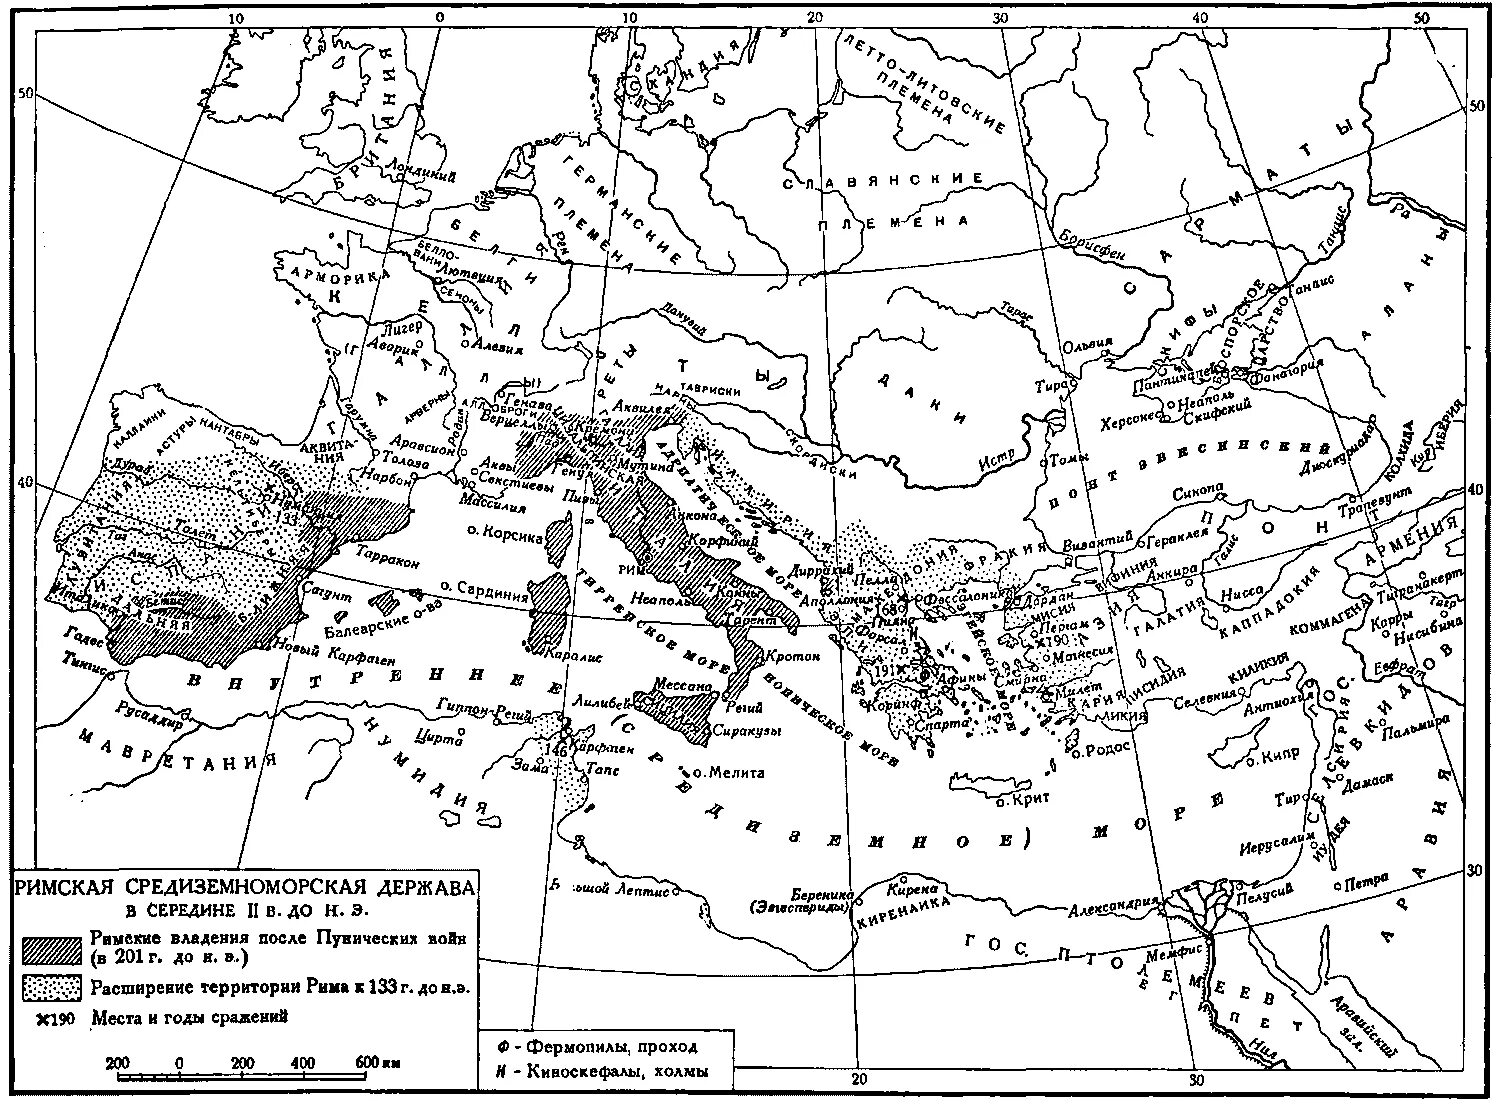 Завоевание восточного средиземноморья. Римская Империя 2 век до н.э. Римская Империя 3 веке до нэ. Древний Рим 1 век н.э.